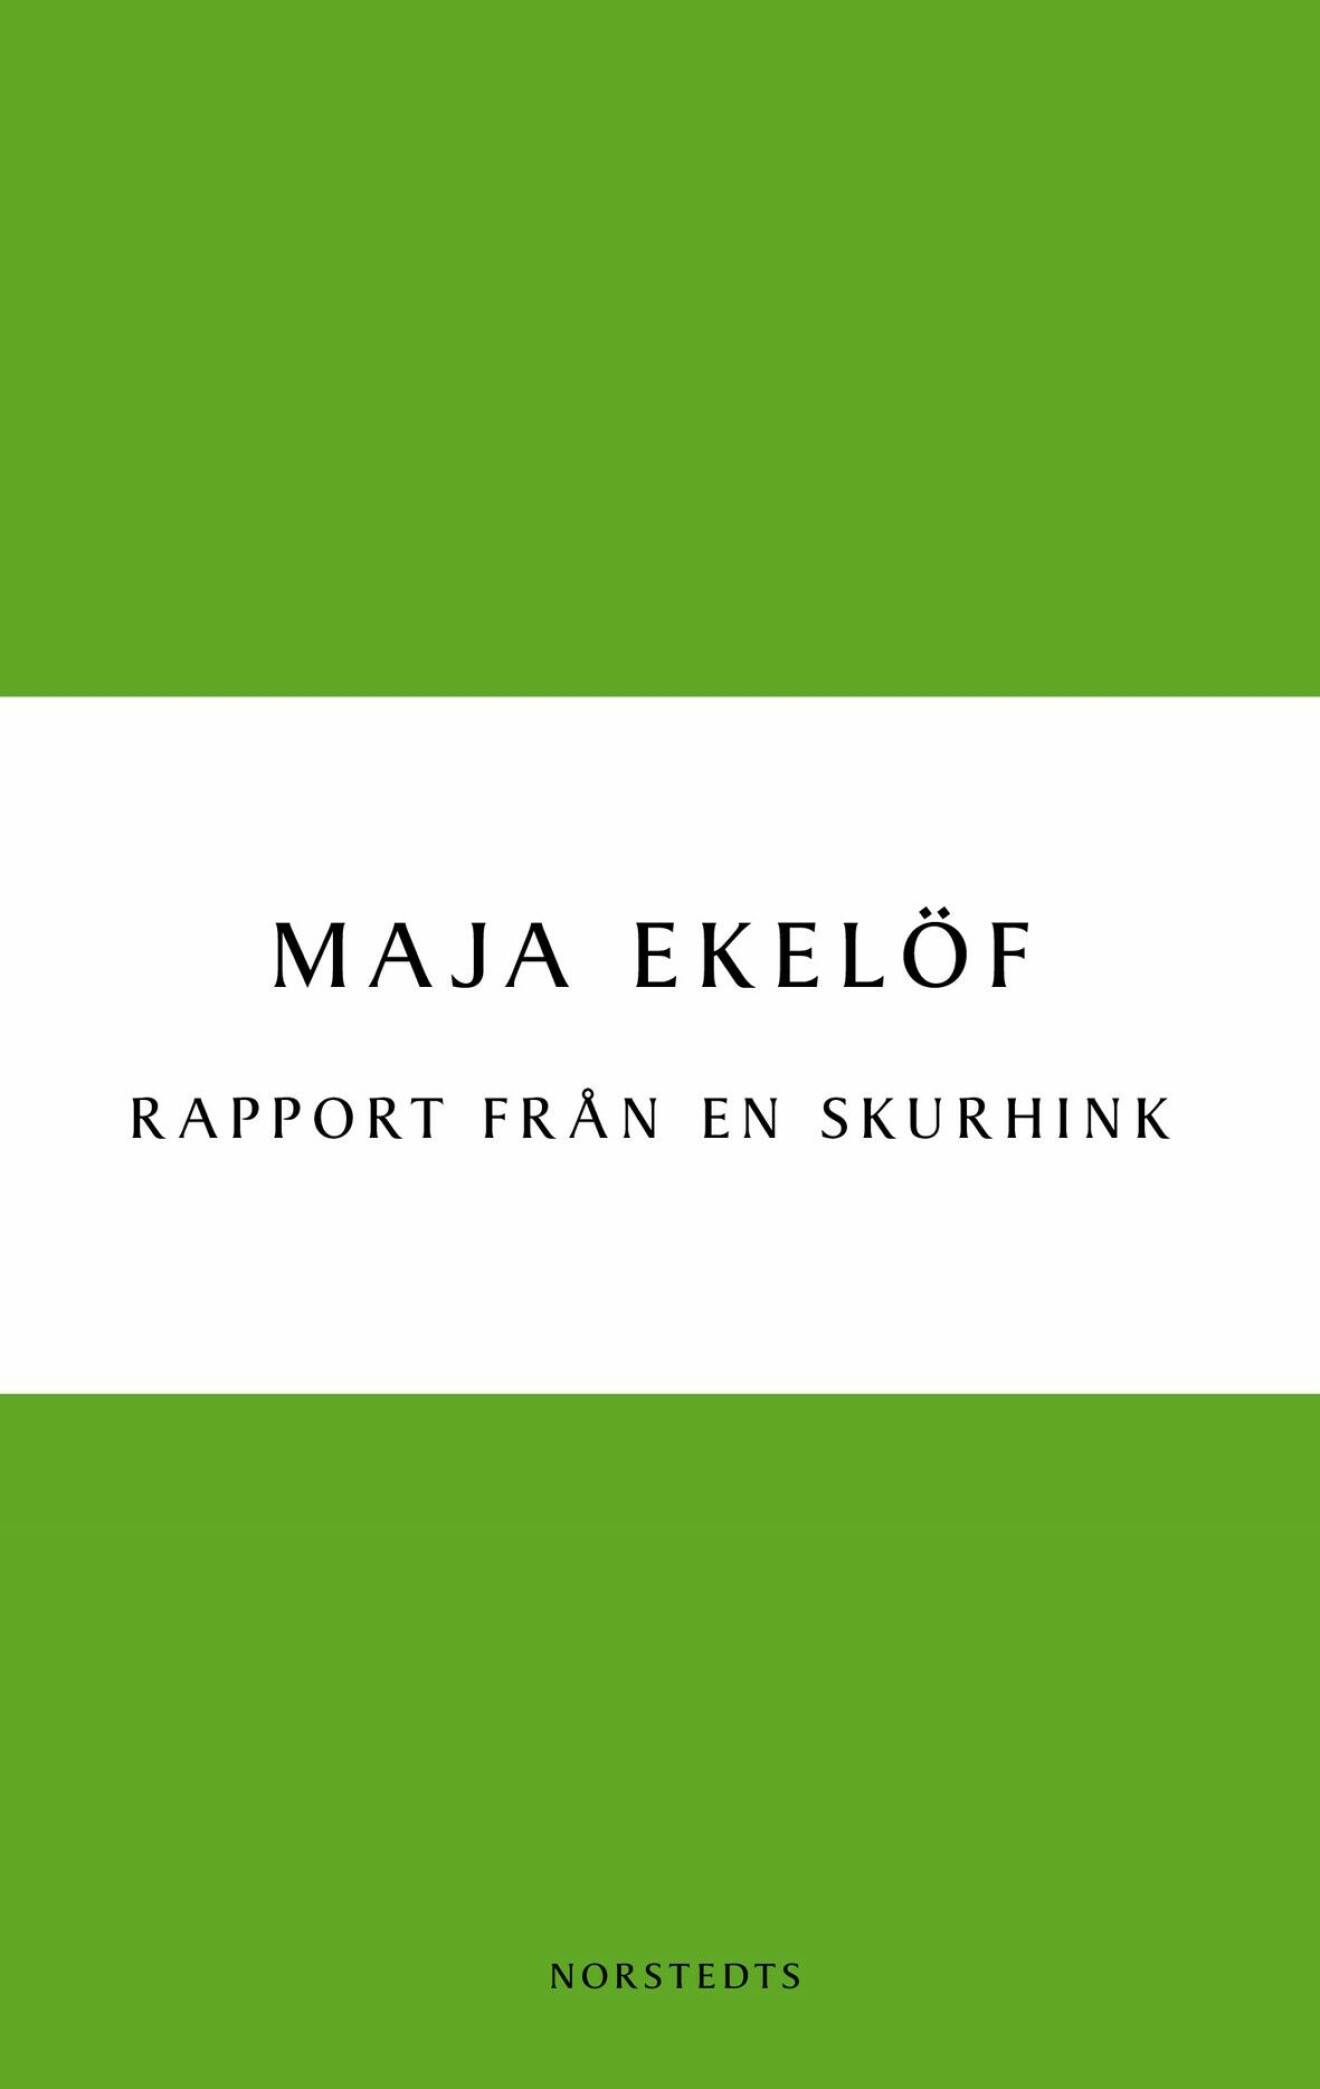 Rapport från en skurhink av Maja Ekelöfs.